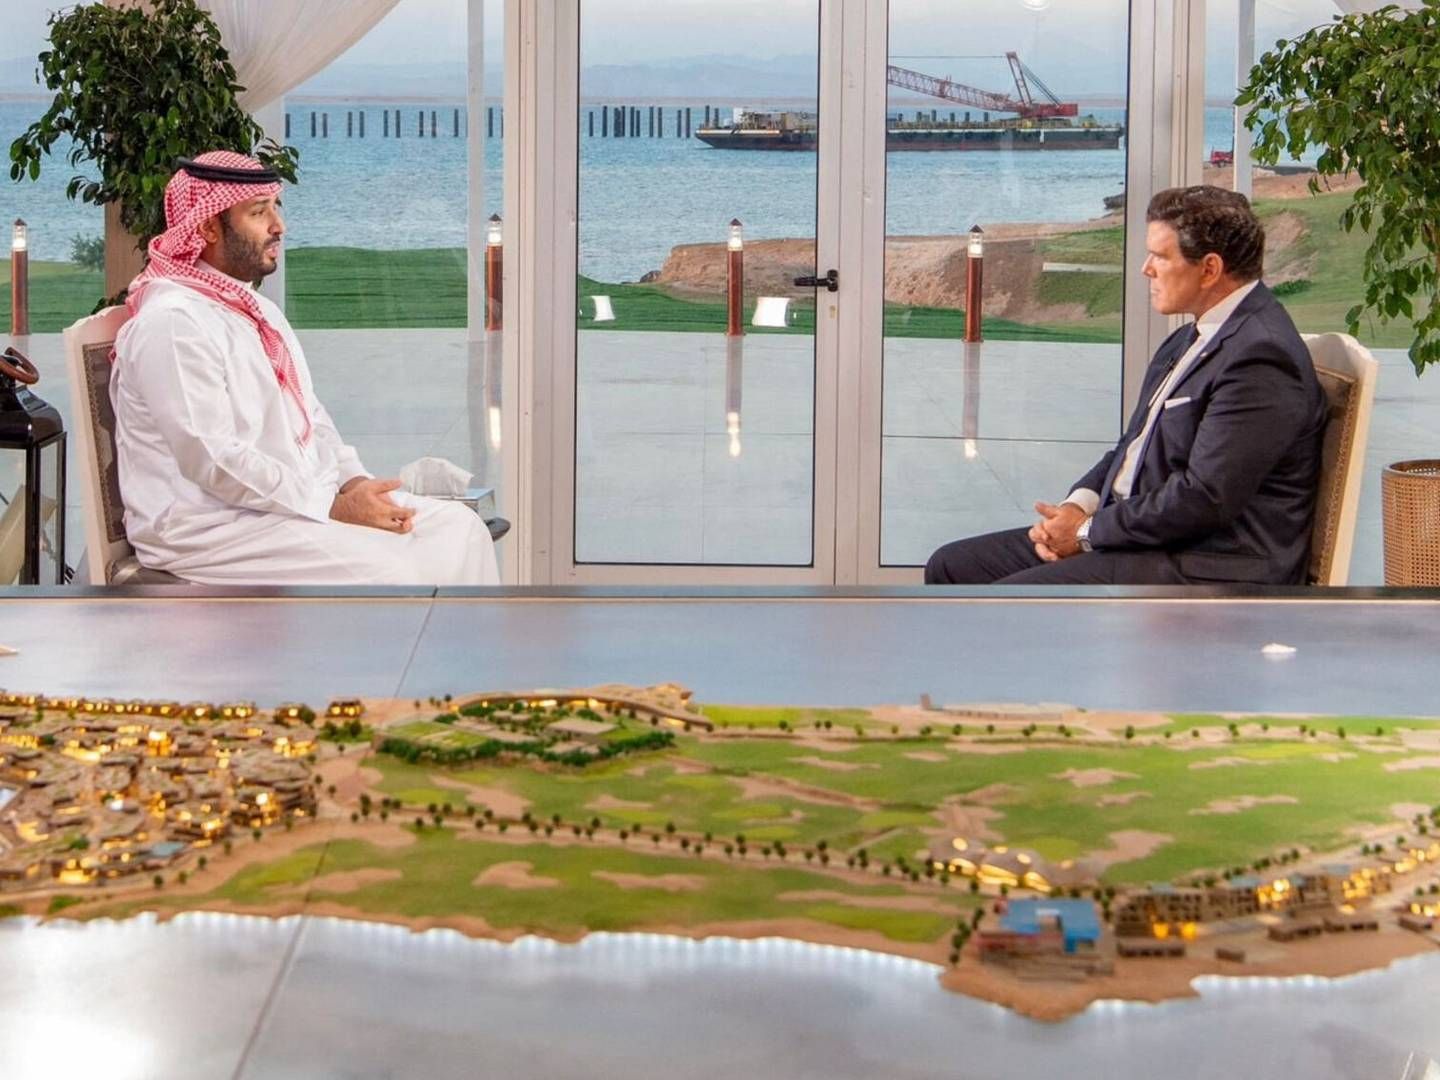 Saudi-Arabiens kronprins, Mohammed bin Salman, i et interview med Fox News for fire uger siden. I forgrunden ses modelversion af det fremtidige Neom.